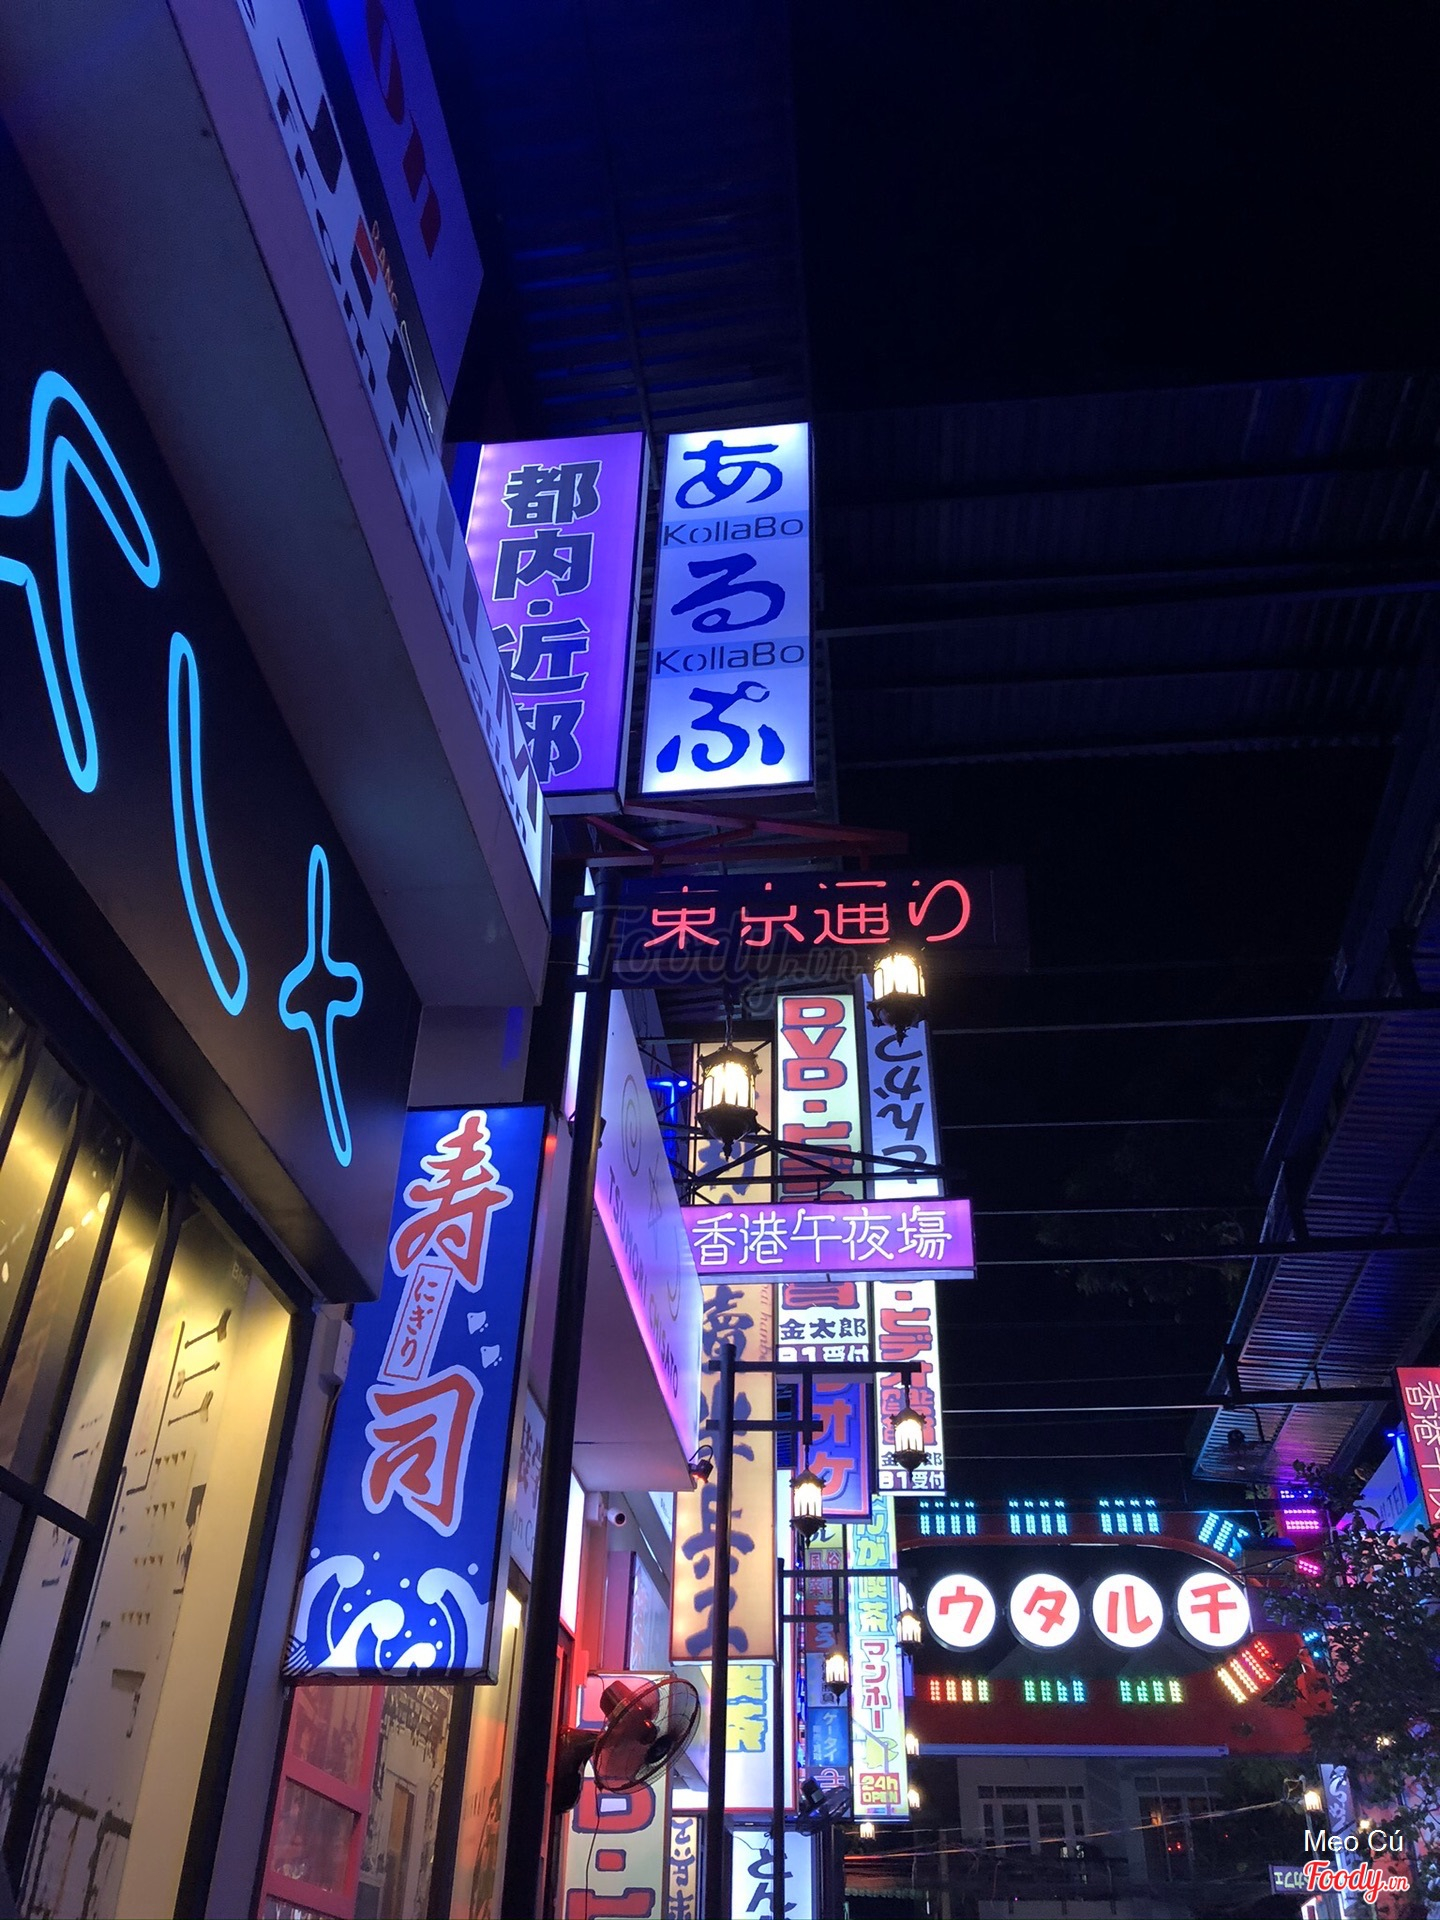 Điểm đến mới lạ với phố Bia Nhật Bản sẽ khiến cho bạn có những trải nghiệm thú vị khó quên. Hãy cùng chiêm ngưỡng hình ảnh lãng mạn của phố đèn mờ và cảm nhận sự thư thái bên những ly bia với hương vị đậm chất Á Đông.